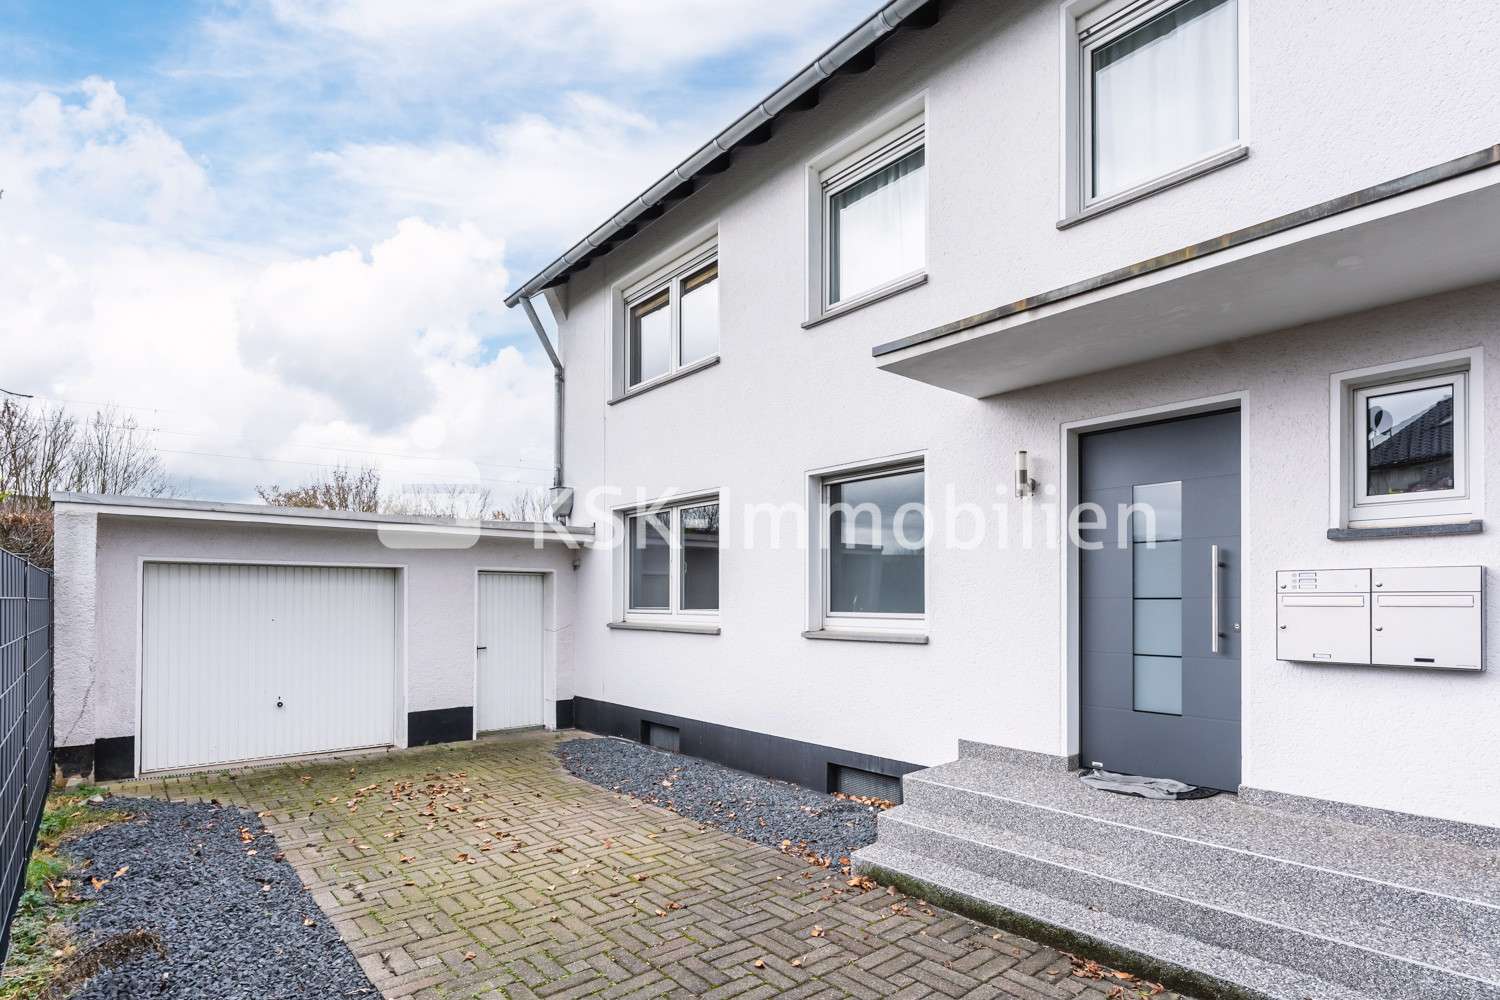 110516 Außenansicht - Zweifamilienhaus in 53757 Sankt Augustin mit 171m² günstig kaufen